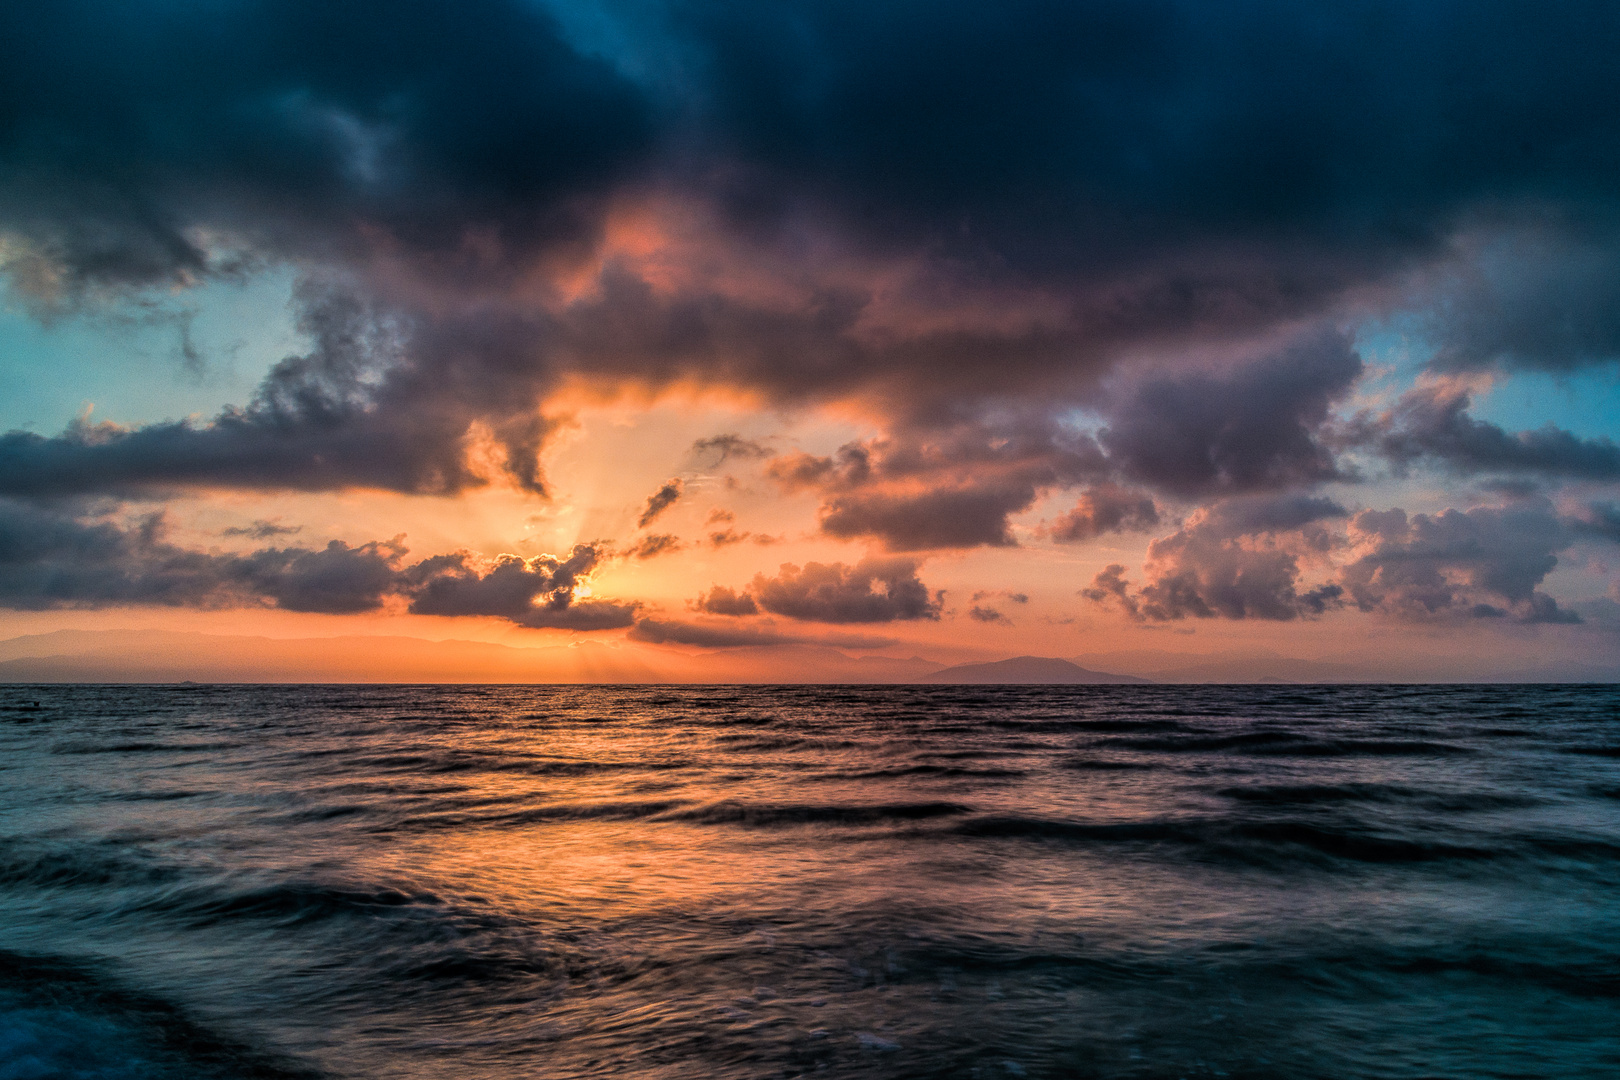 Sonnenaufgang Ionisches Meer